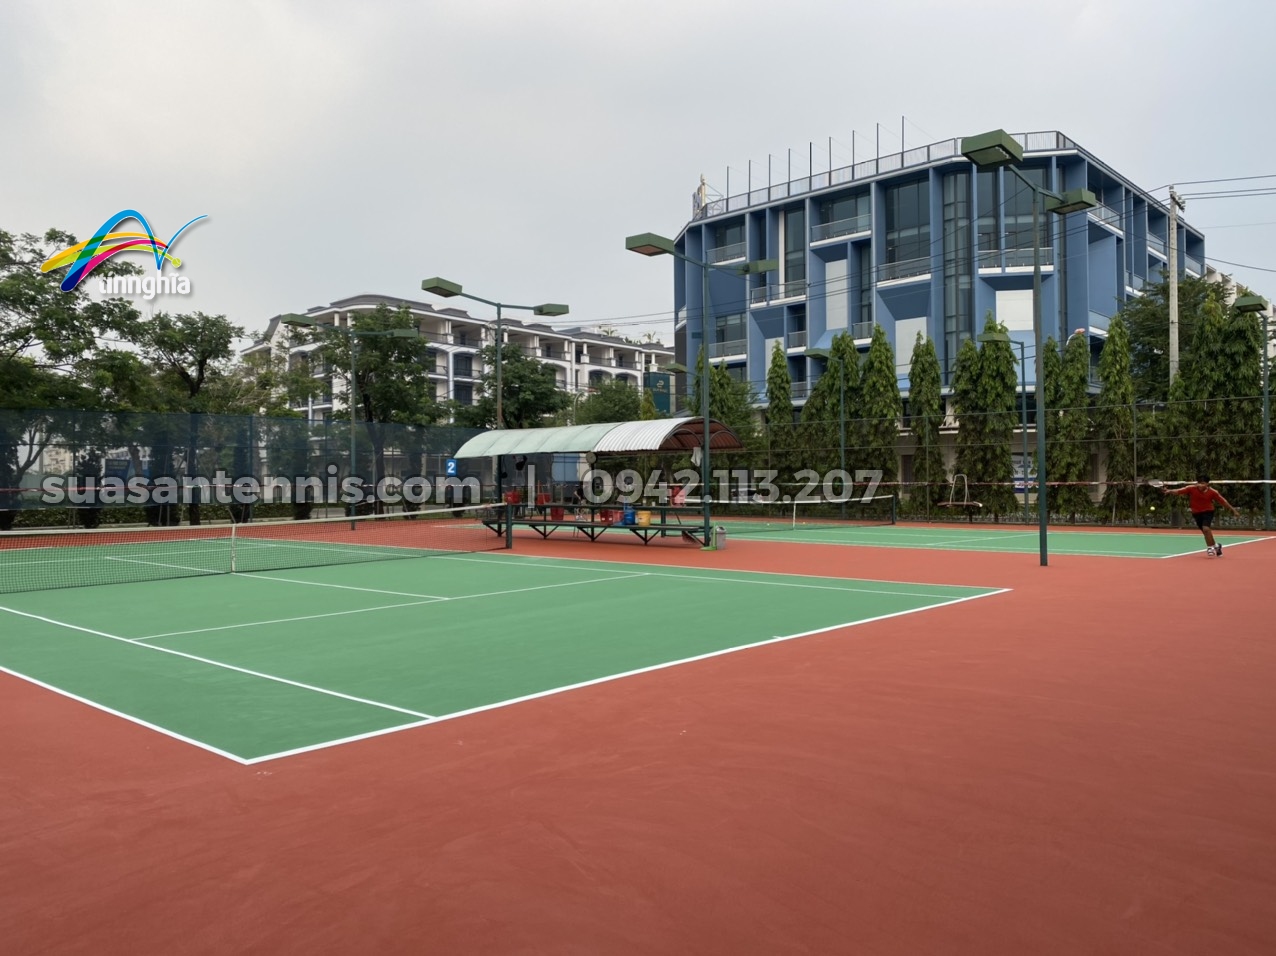 Tín Nghĩa trùng tu, sửa chữa lại sân tennis Vạn Phúc sau 5 năm sử dụng